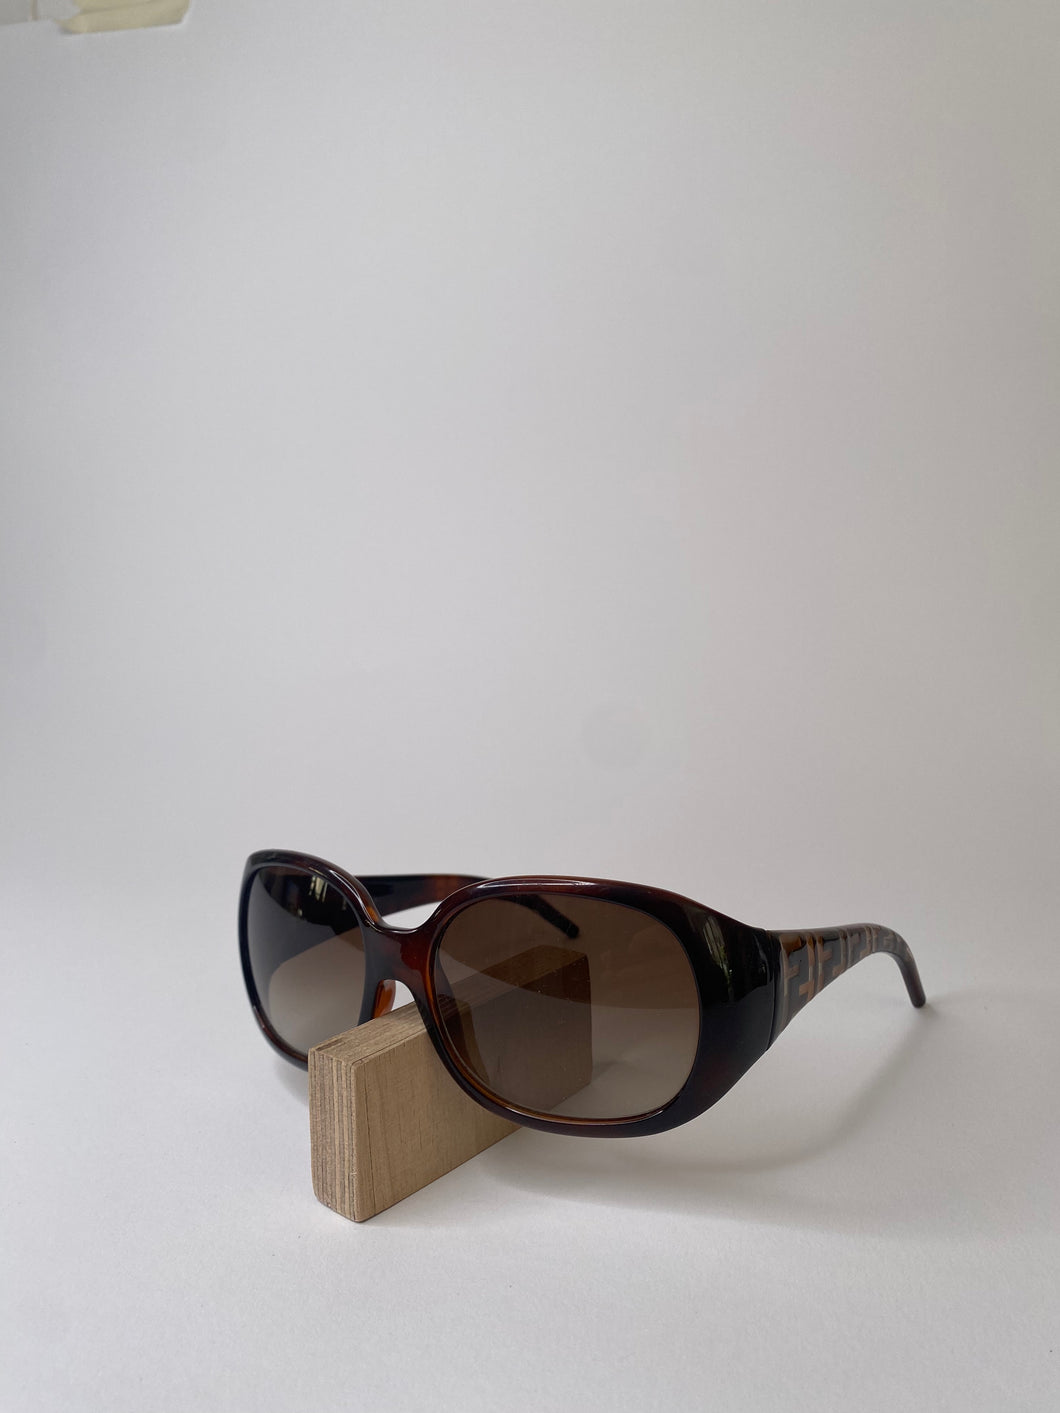 2000s Fendi sunglasses brown